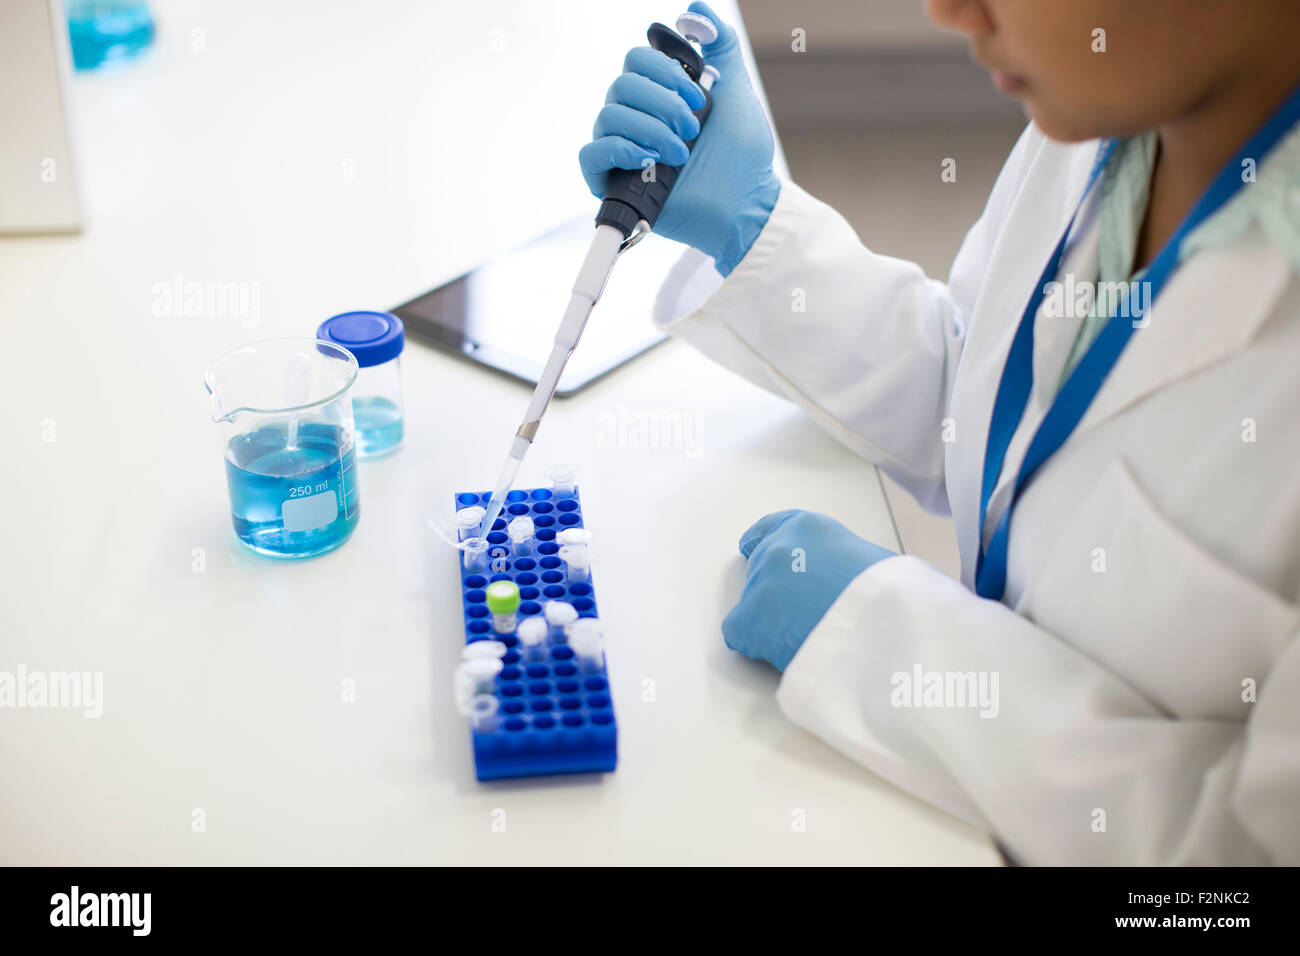 Razza mista scienziato il pipettaggio di campione nella provetta in laboratorio Foto Stock